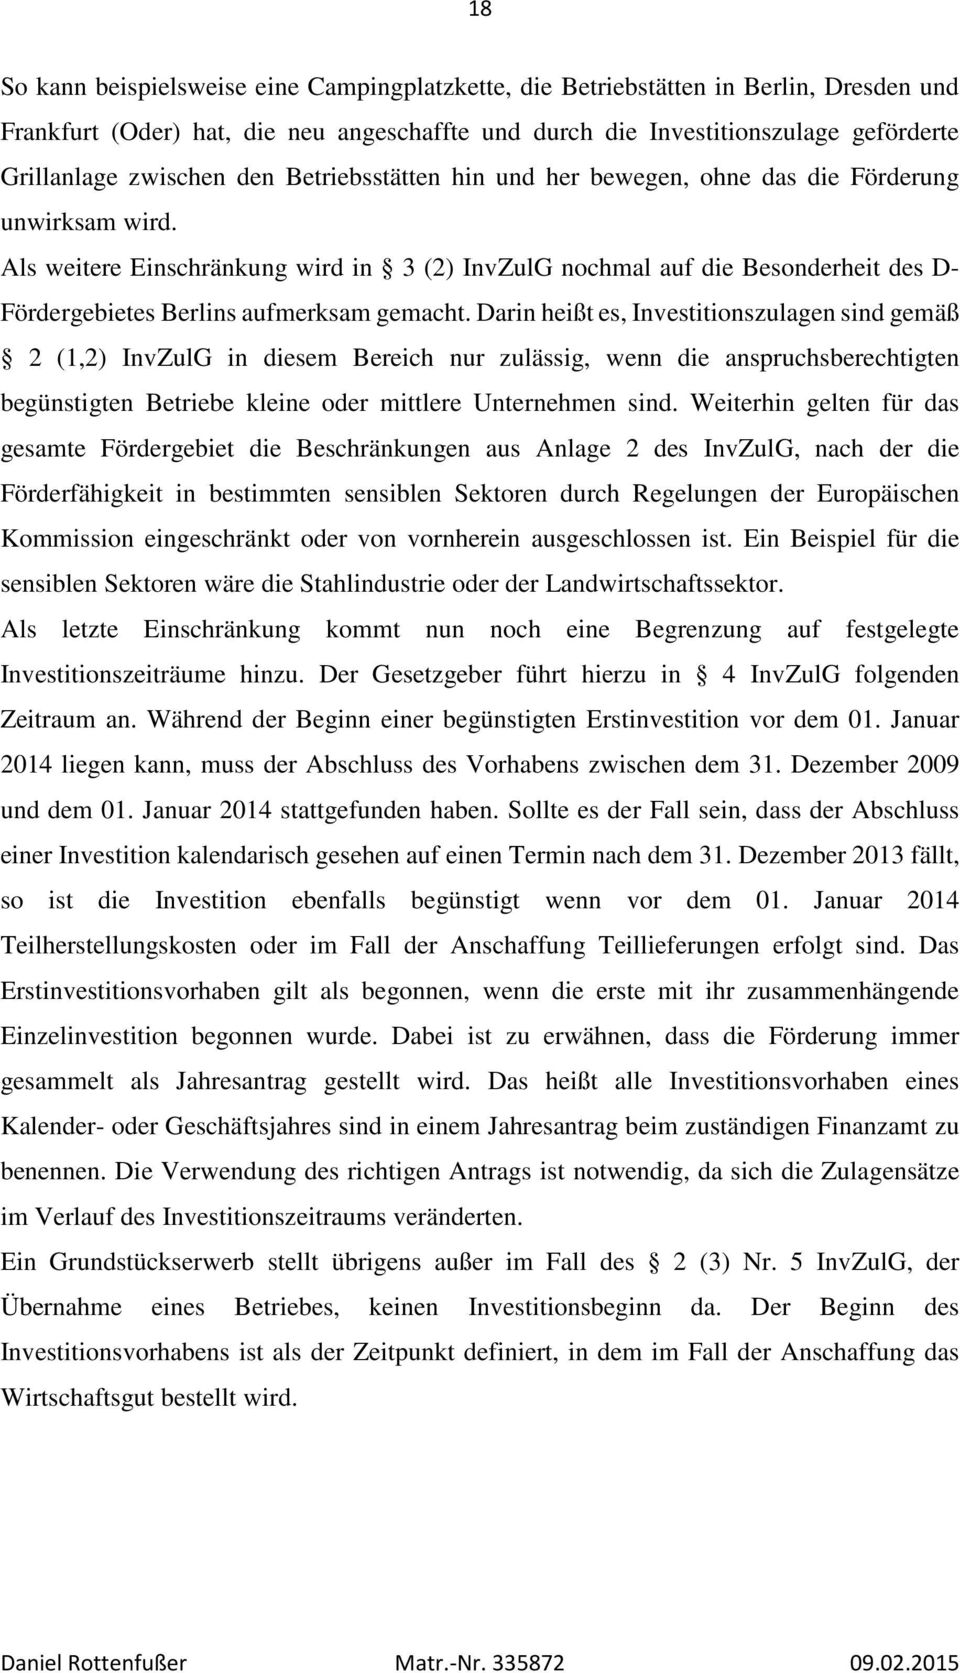 Als weitere Einschränkung wird in 3 (2) InvZulG nochmal auf die Besonderheit des D- Fördergebietes Berlins aufmerksam gemacht.